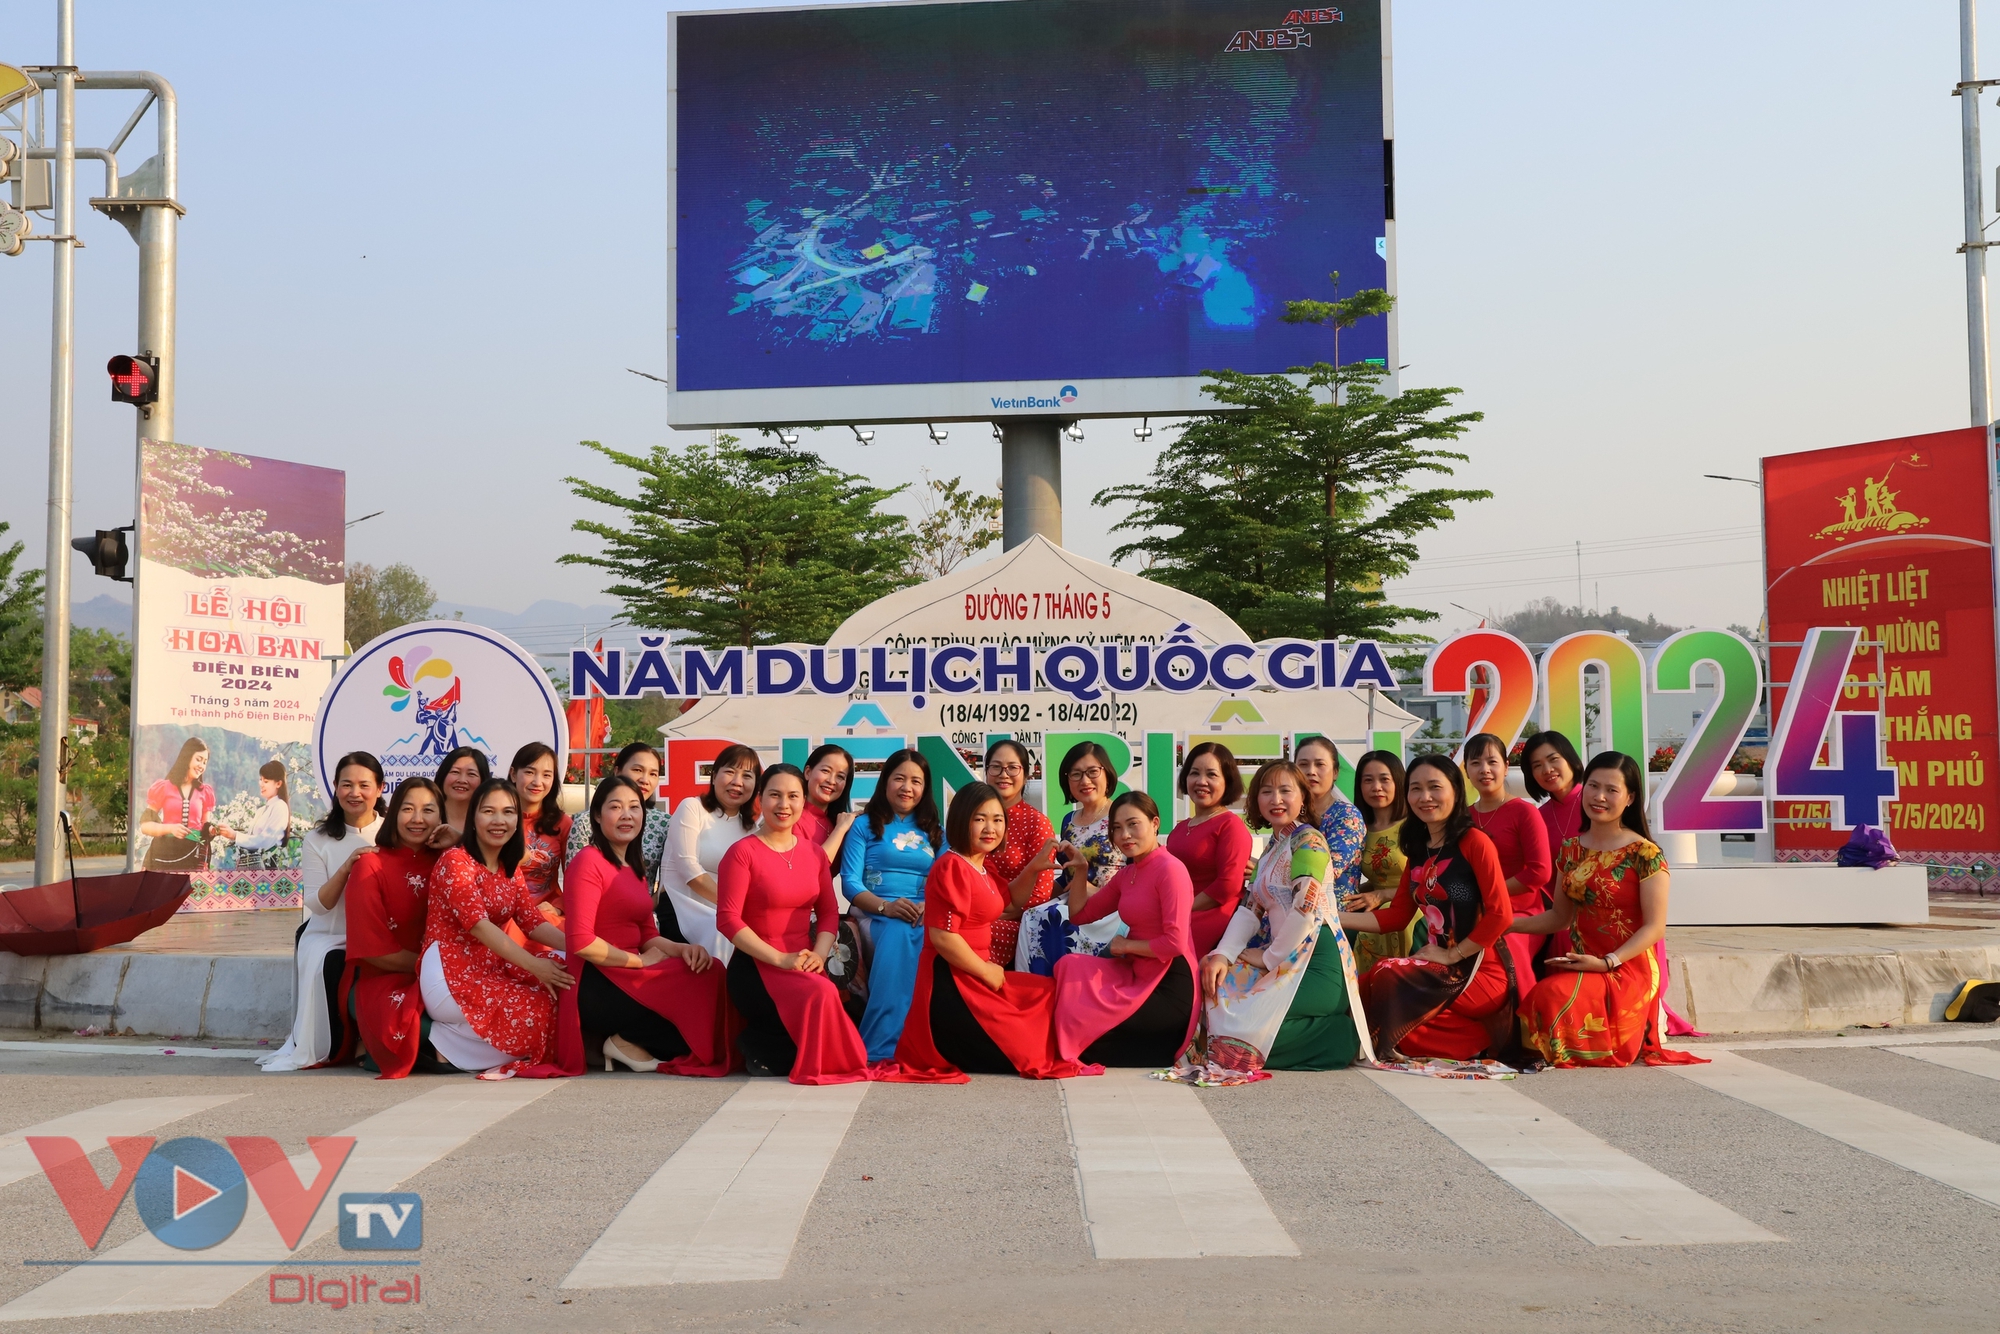 Điện Biên rực rỡ cờ hoa, khách du lịch hào hứng chào đón khai mạc năm Du lịch Quốc gia 2024- Ảnh 8.